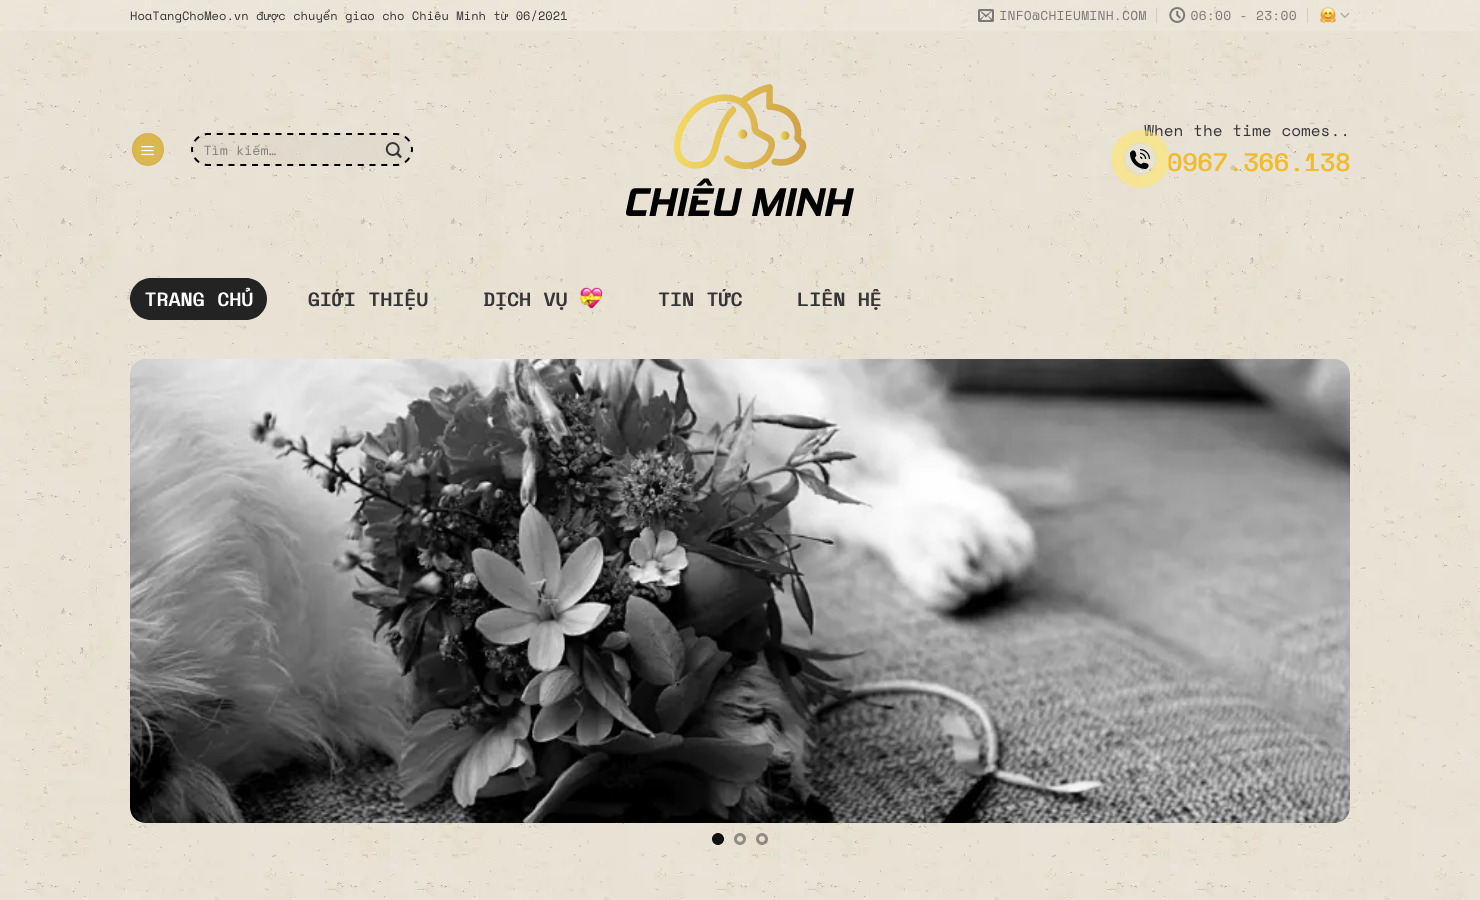 Chieu Minh Pet Cremation